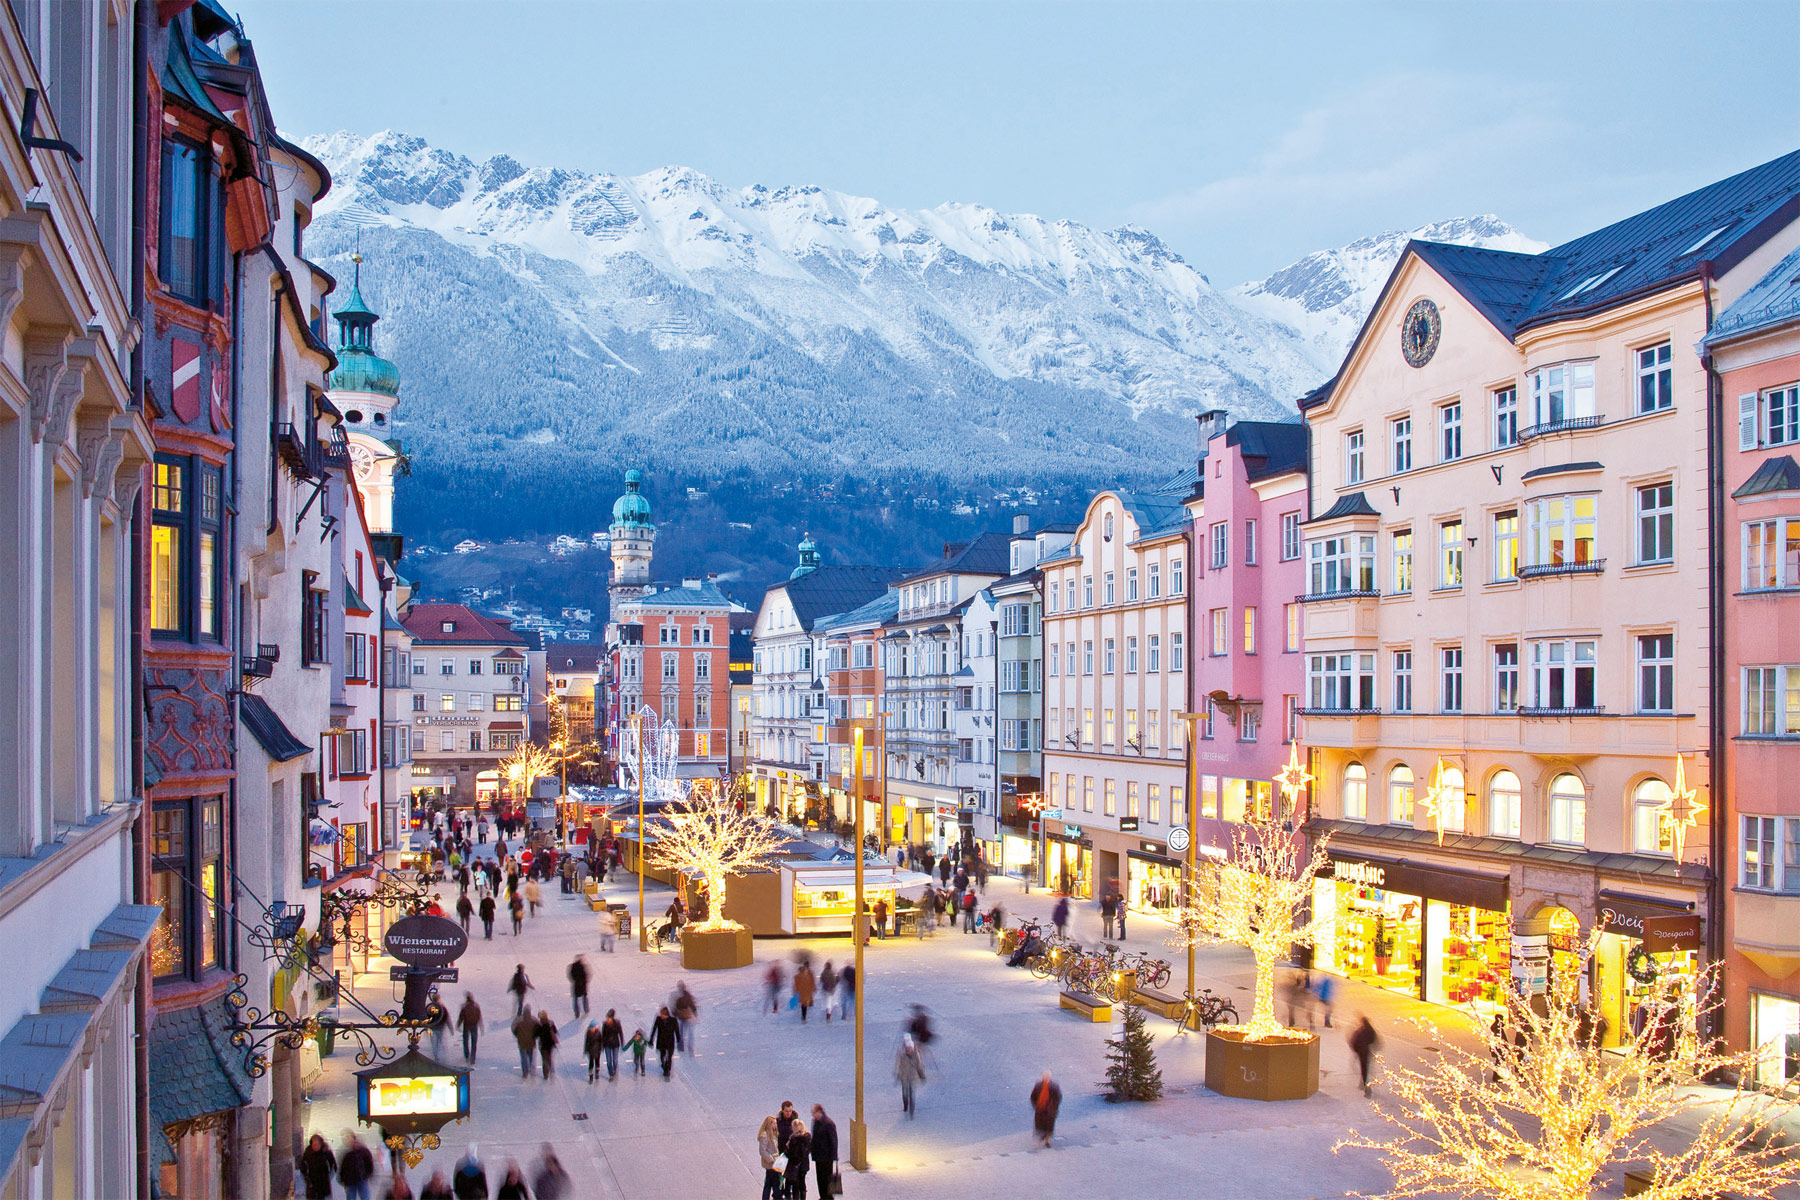 Innsbruck città d'arte: 5 musei per conoscere l'arte nel capoluogo del Tirolo